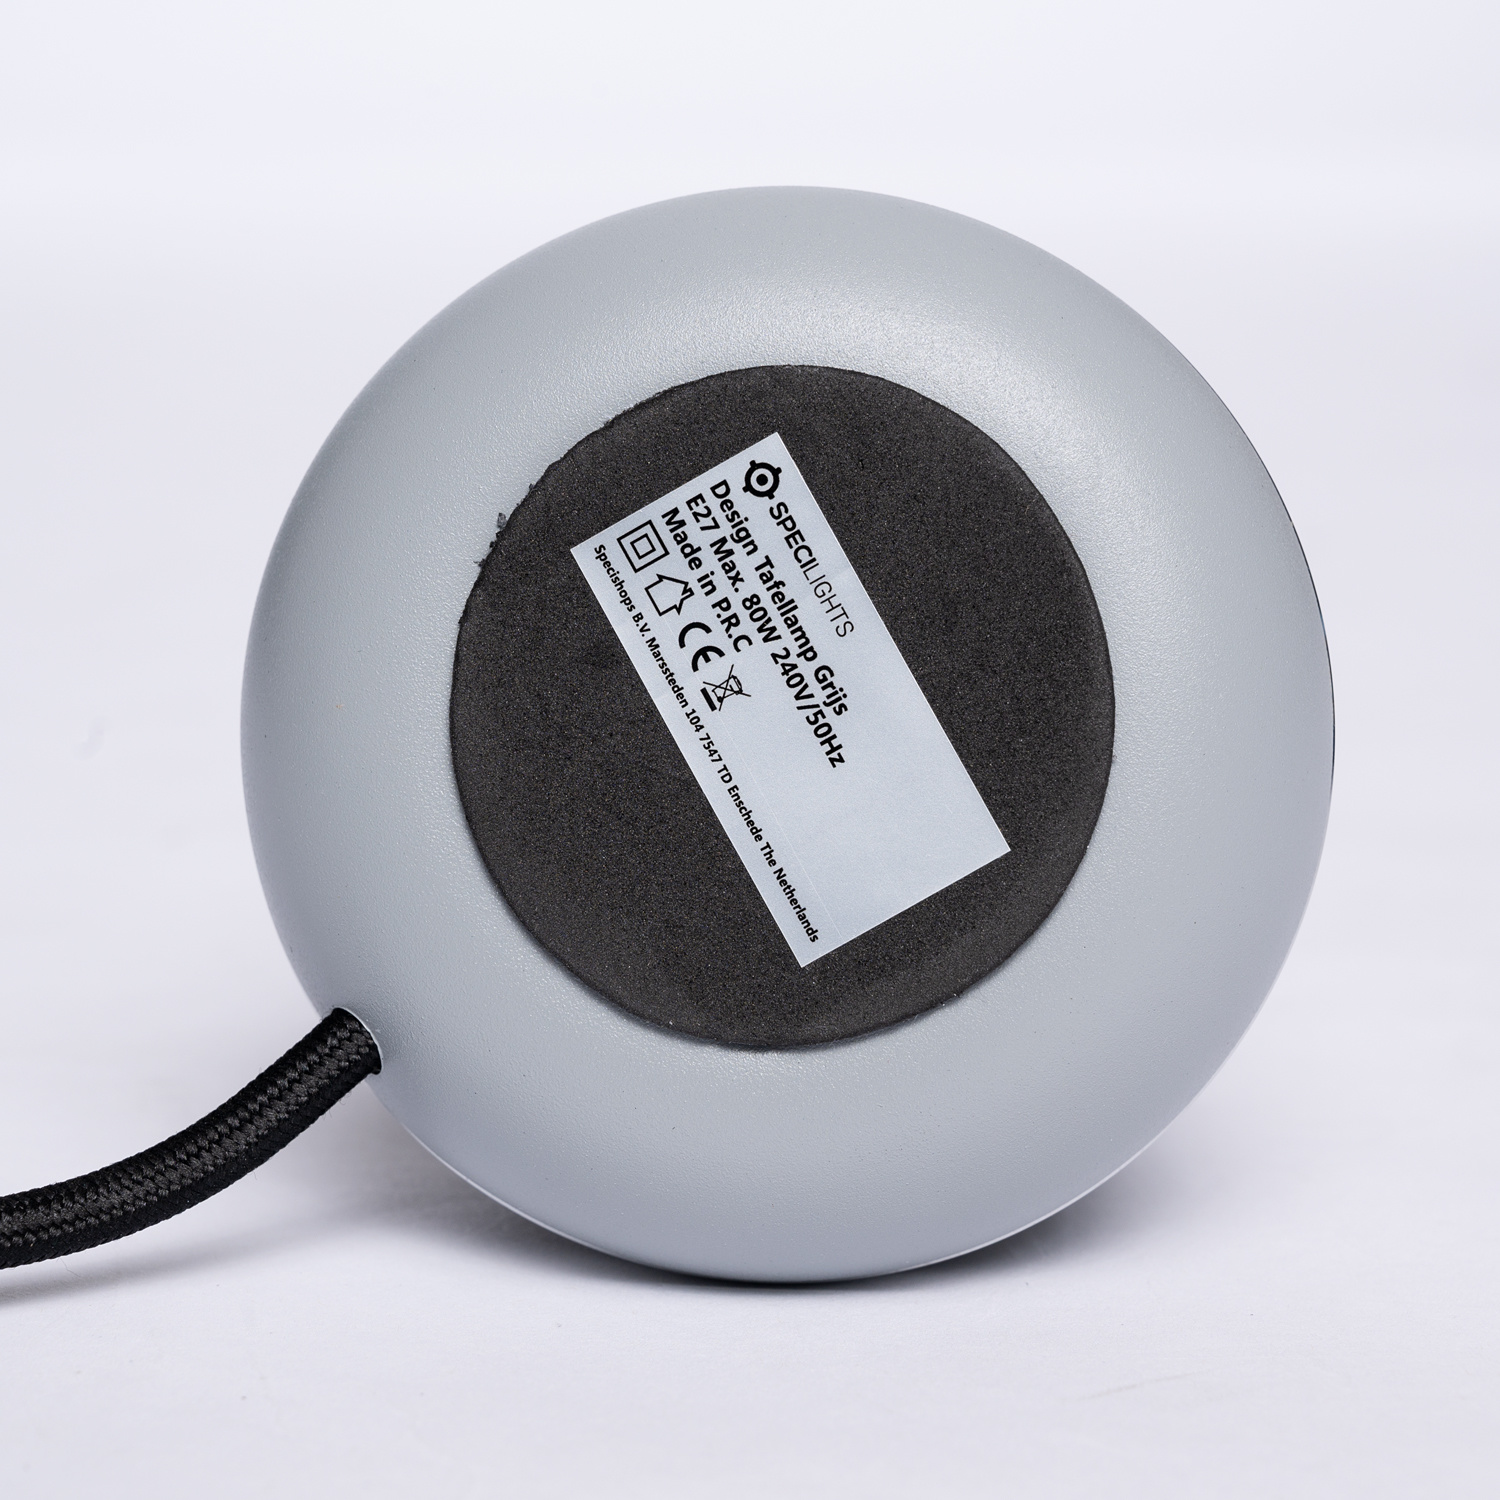 Stier Cyclopen Facet Design Tafellamp Grijs - Zilveren Ring - E27 fitting met 1,5 meter kabel  met stekker en schakelaar - LedlampshopXL